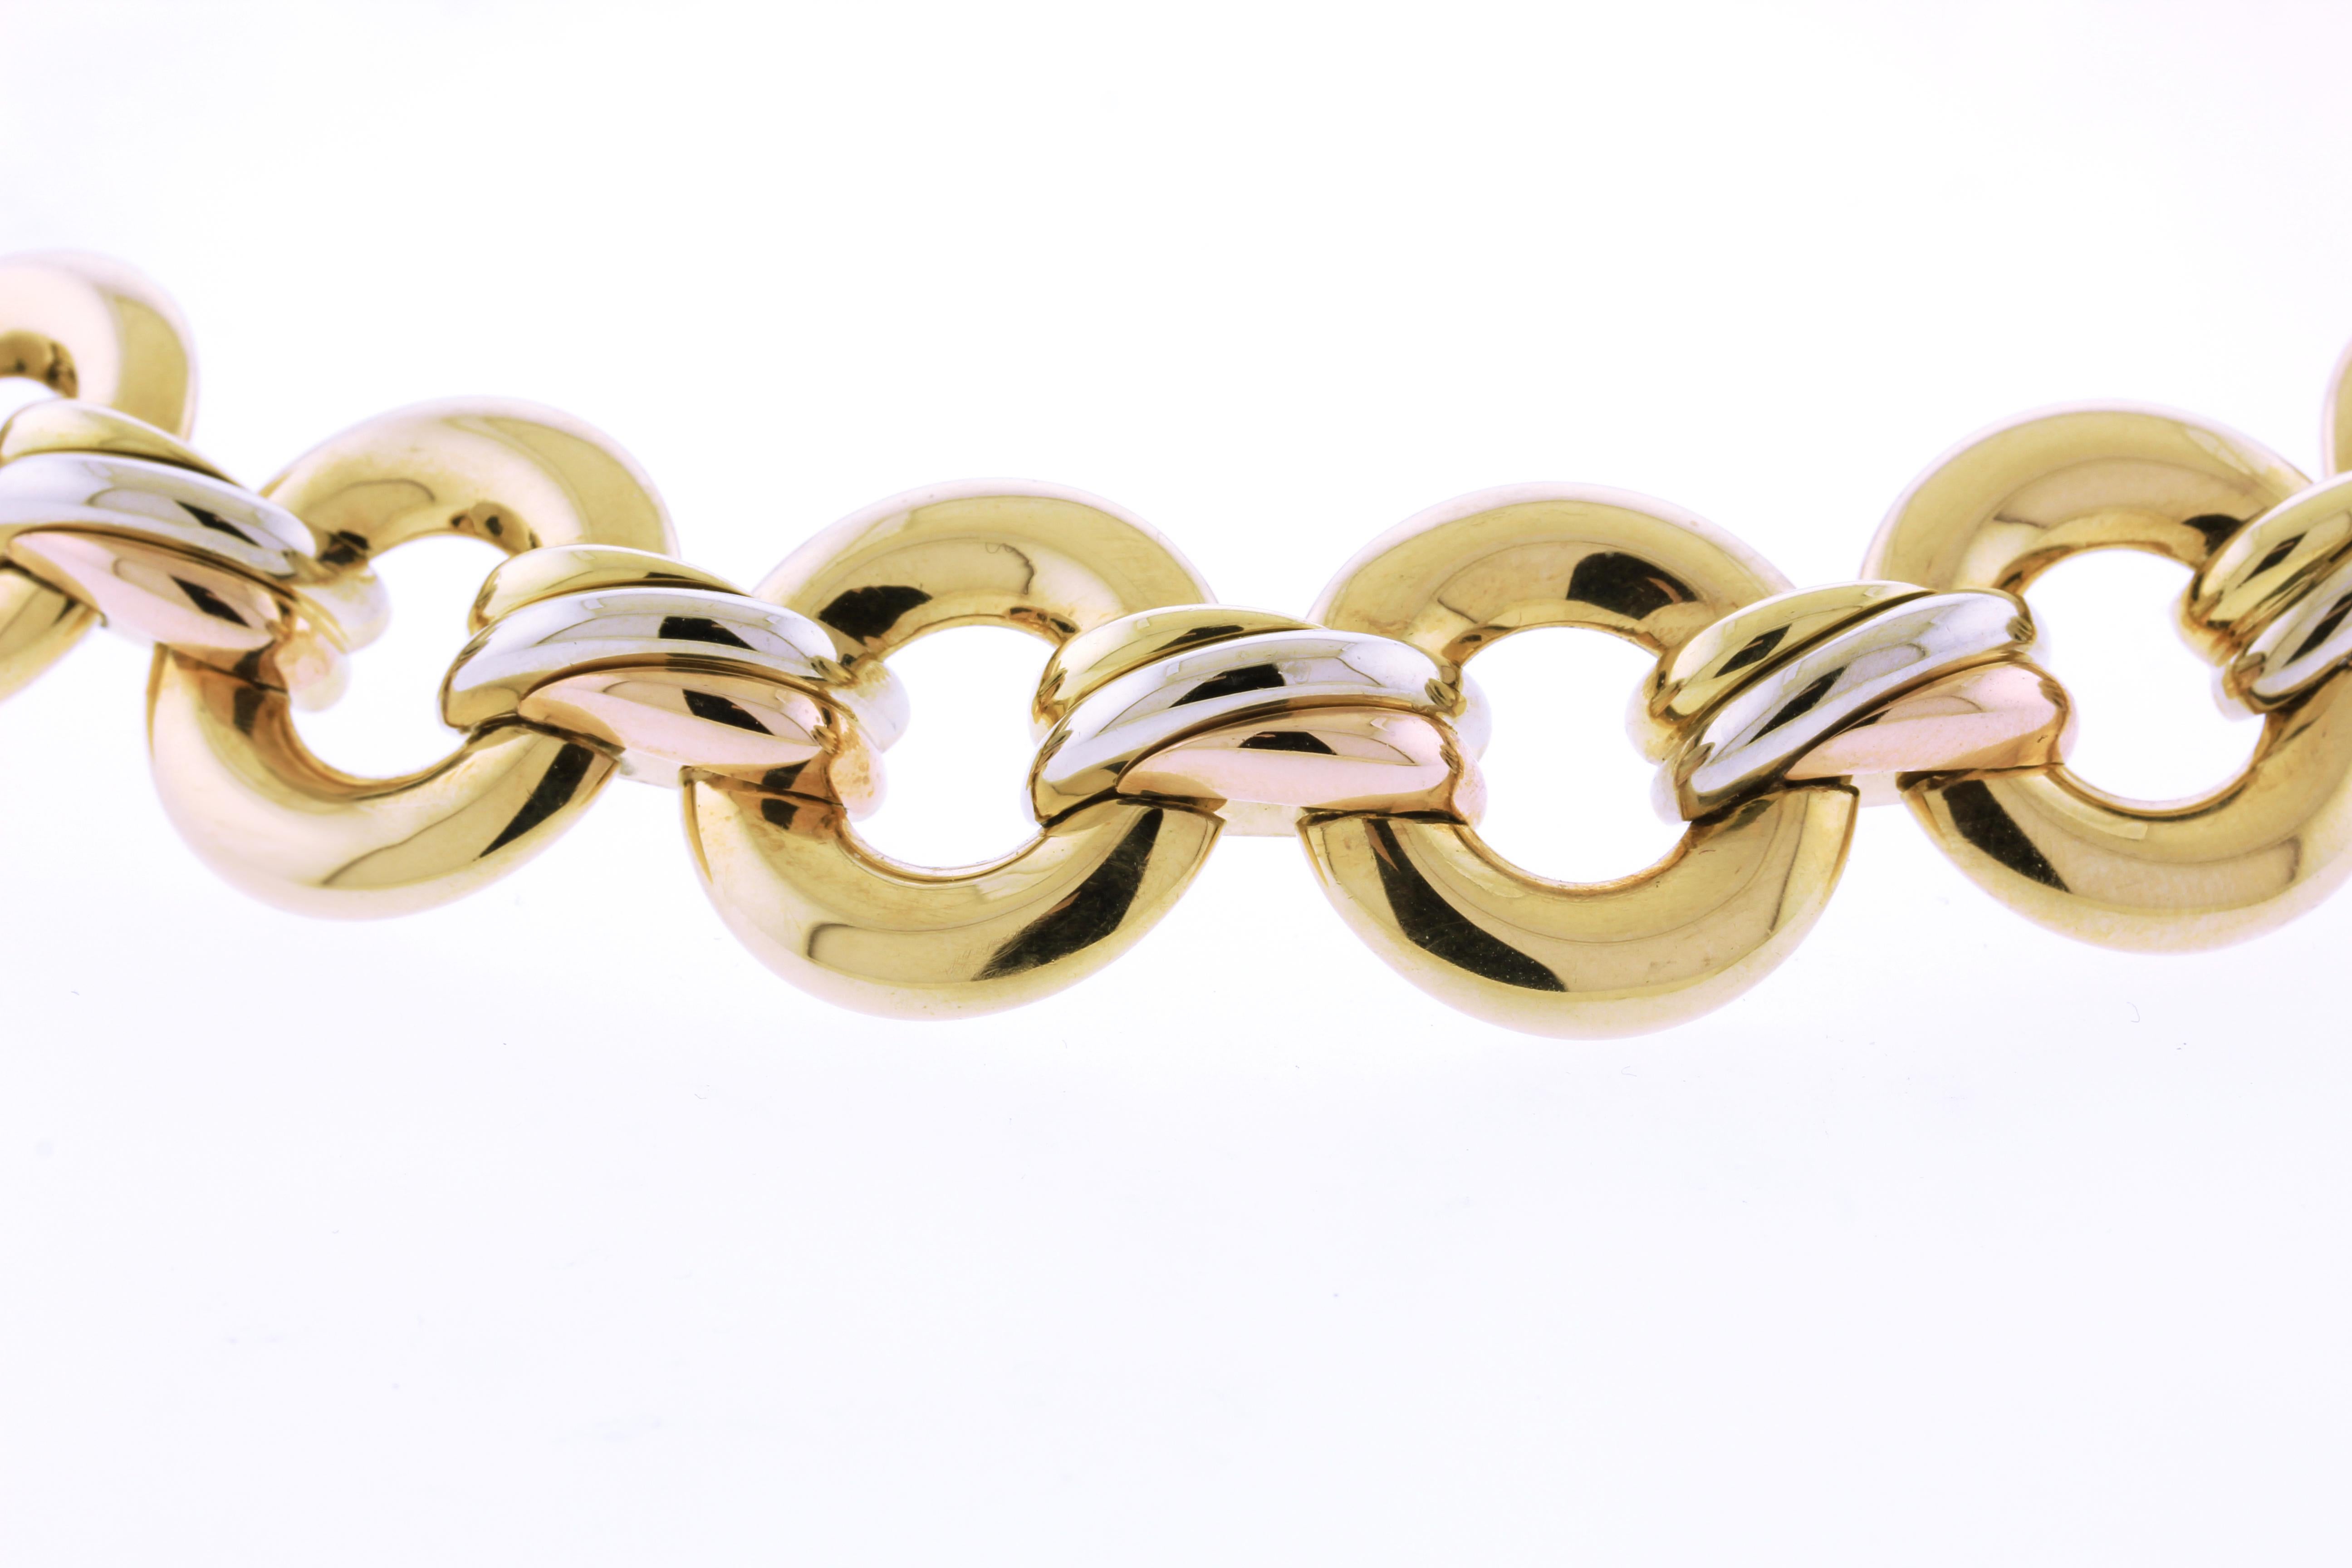 Die Cartier Trinity Halskette ist ein klassisches und ikonisches Schmuckstück, das von der renommierten französischen Luxusschmuckmarke Cartier entworfen wurde. Die Trinity-Kollektion wurde erstmals 1924 vorgestellt und zeichnet sich durch ihre drei